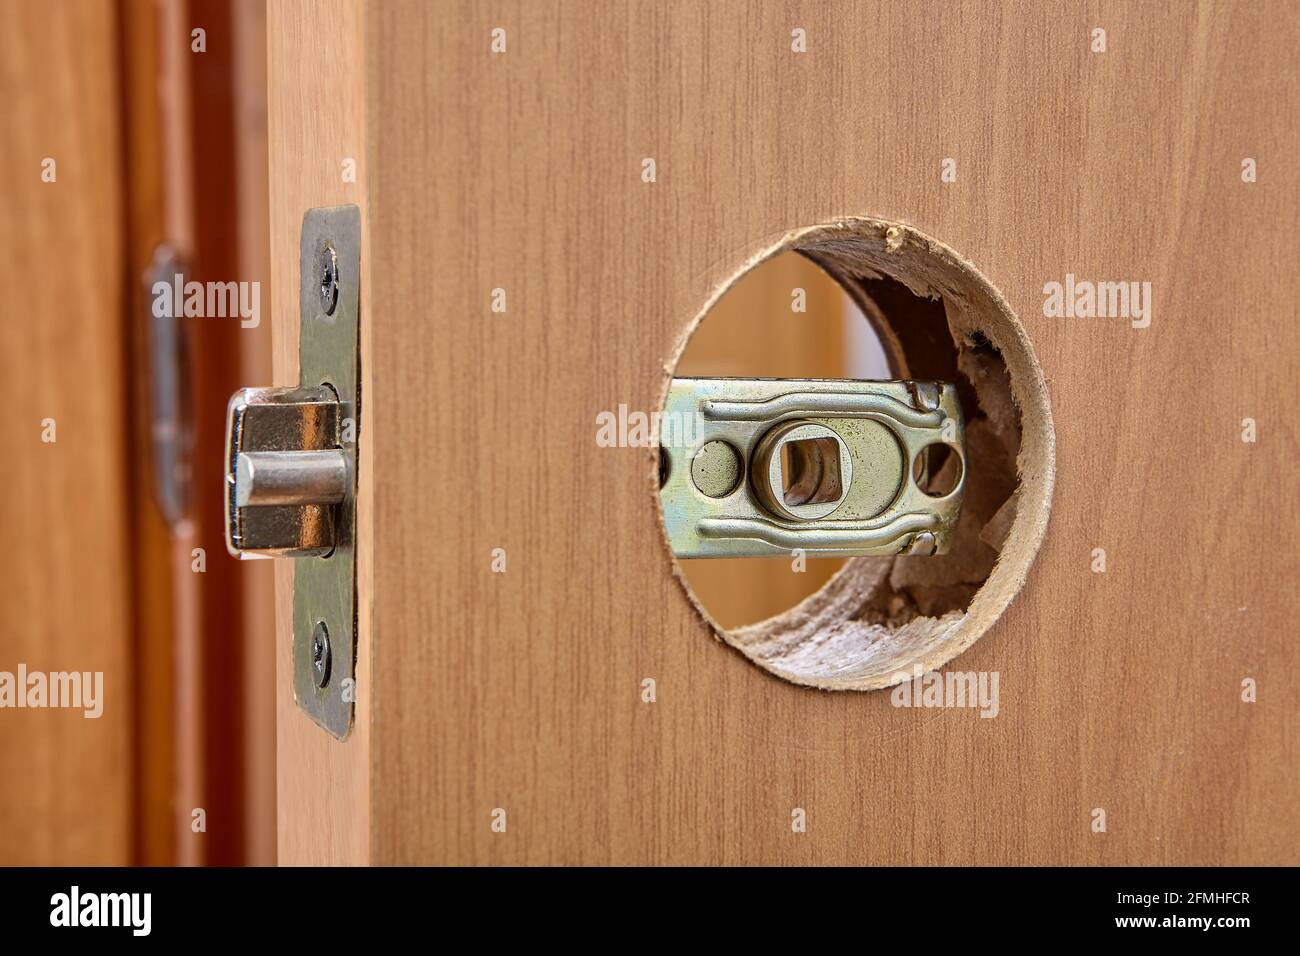 La manija de la puerta con palanca con pestillo está instalada en una puerta  interior de madera Fotografía de stock - Alamy